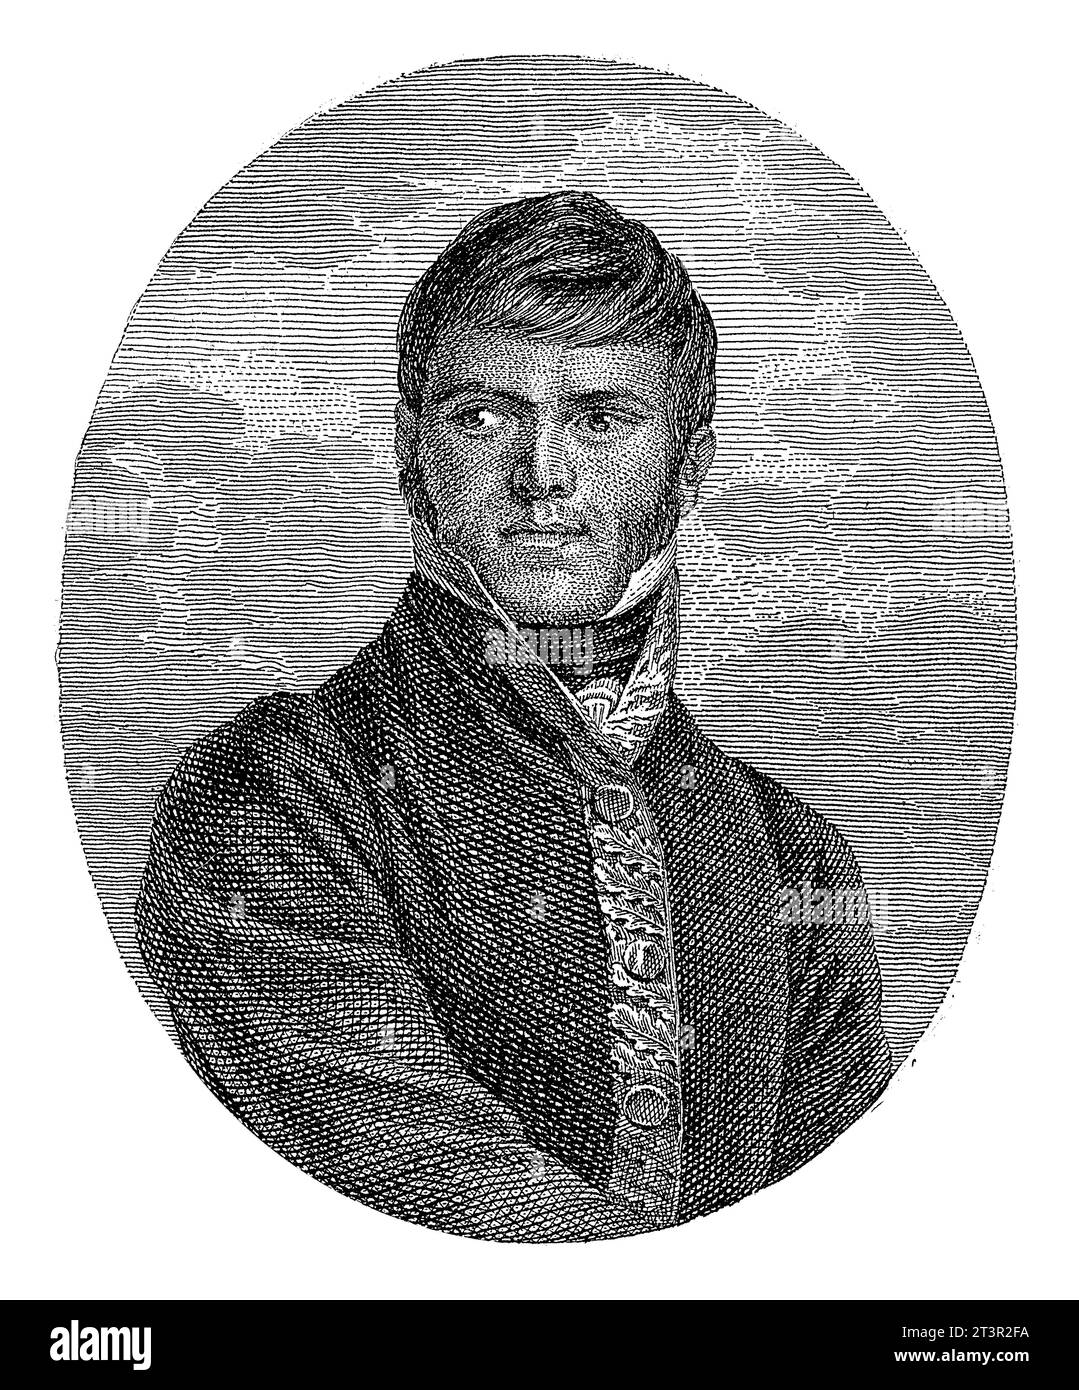 Portrait of the Mexican guerilla leader Francisco Javier Mina, Daniel Veelwaard (I), after J. Harrison, 1776 - 1851, vintage engraved. Stock Photo